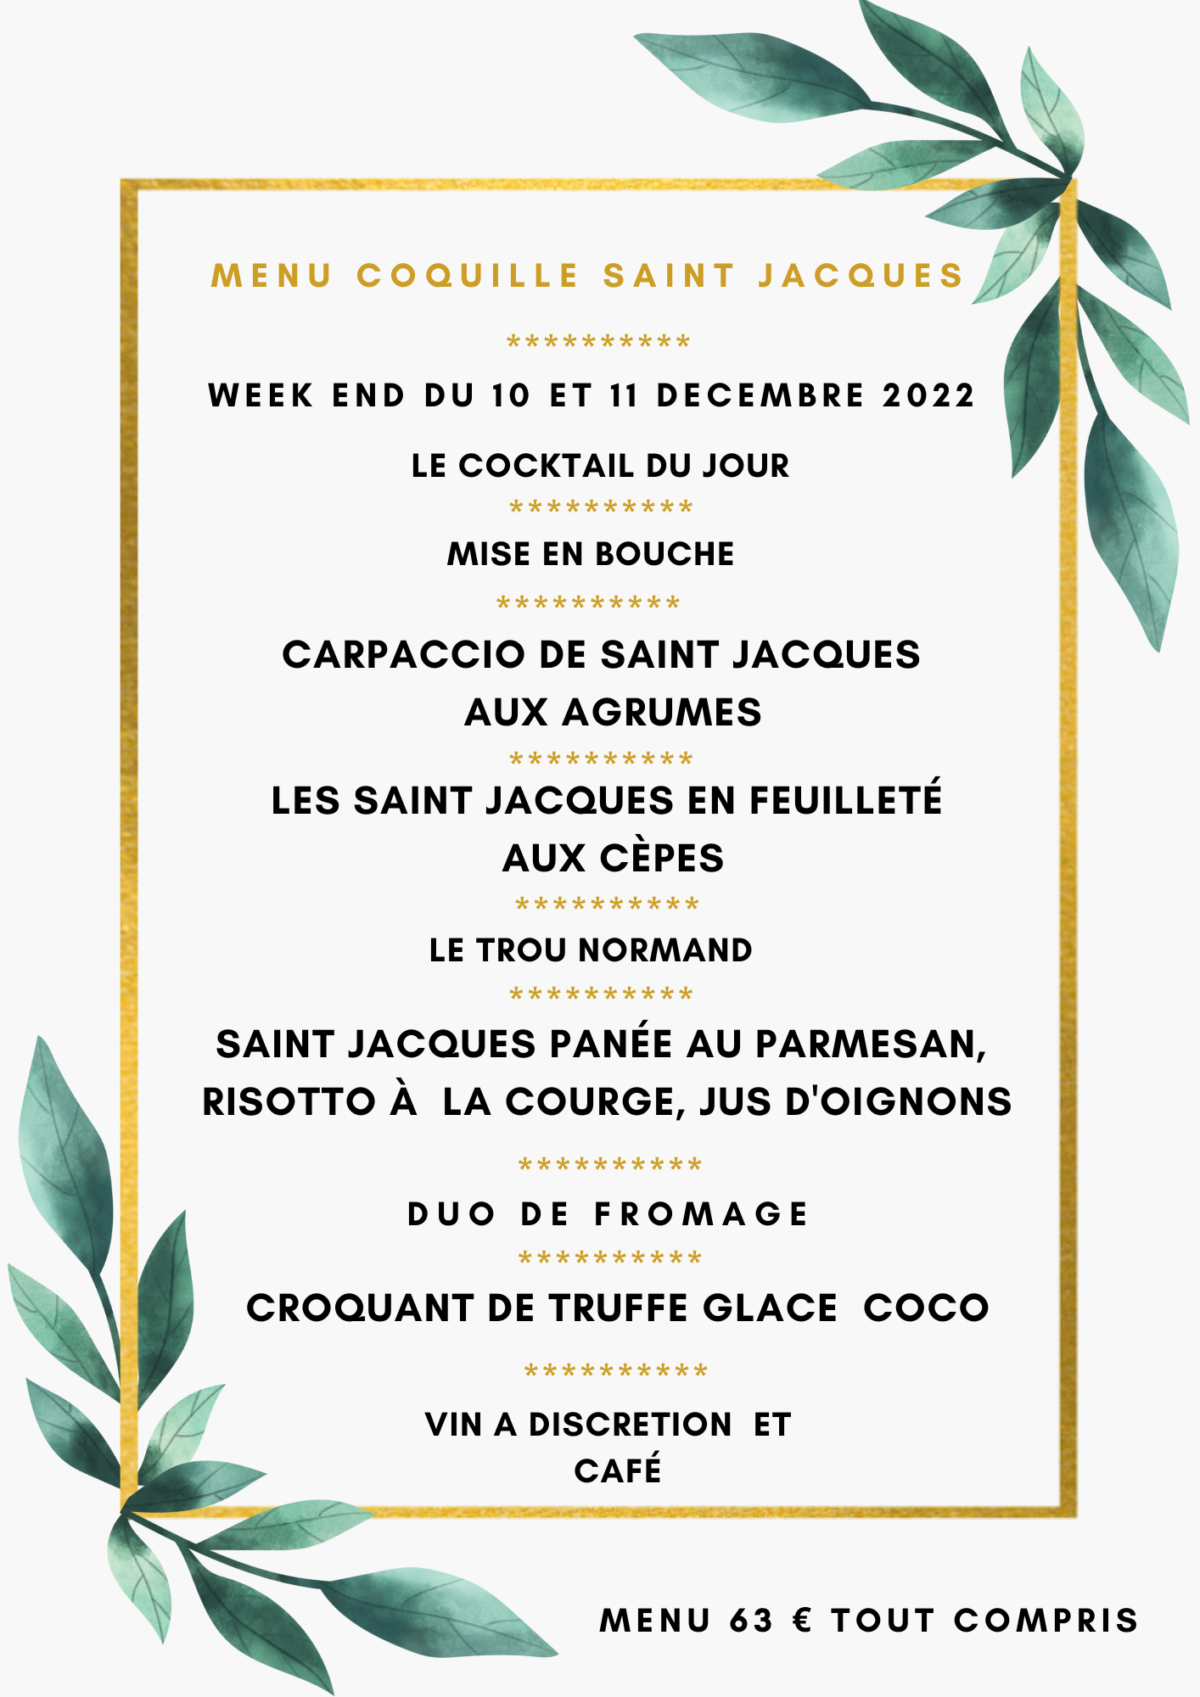 Menu coquille Saint-Jacques/week-end du 10 et 11 décembre 2022